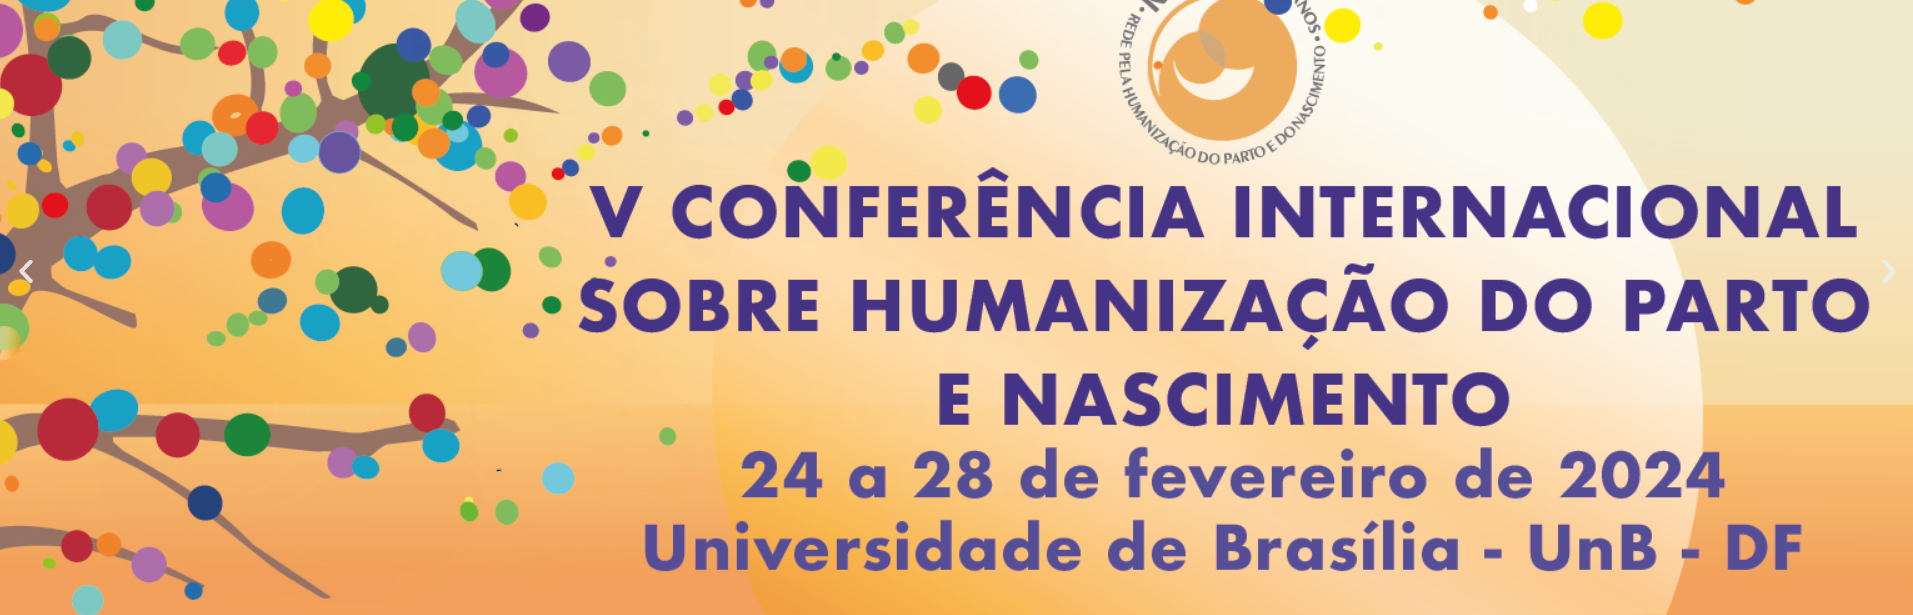 V Conferência Internacional sobre Humanização do Parto e Nascimento